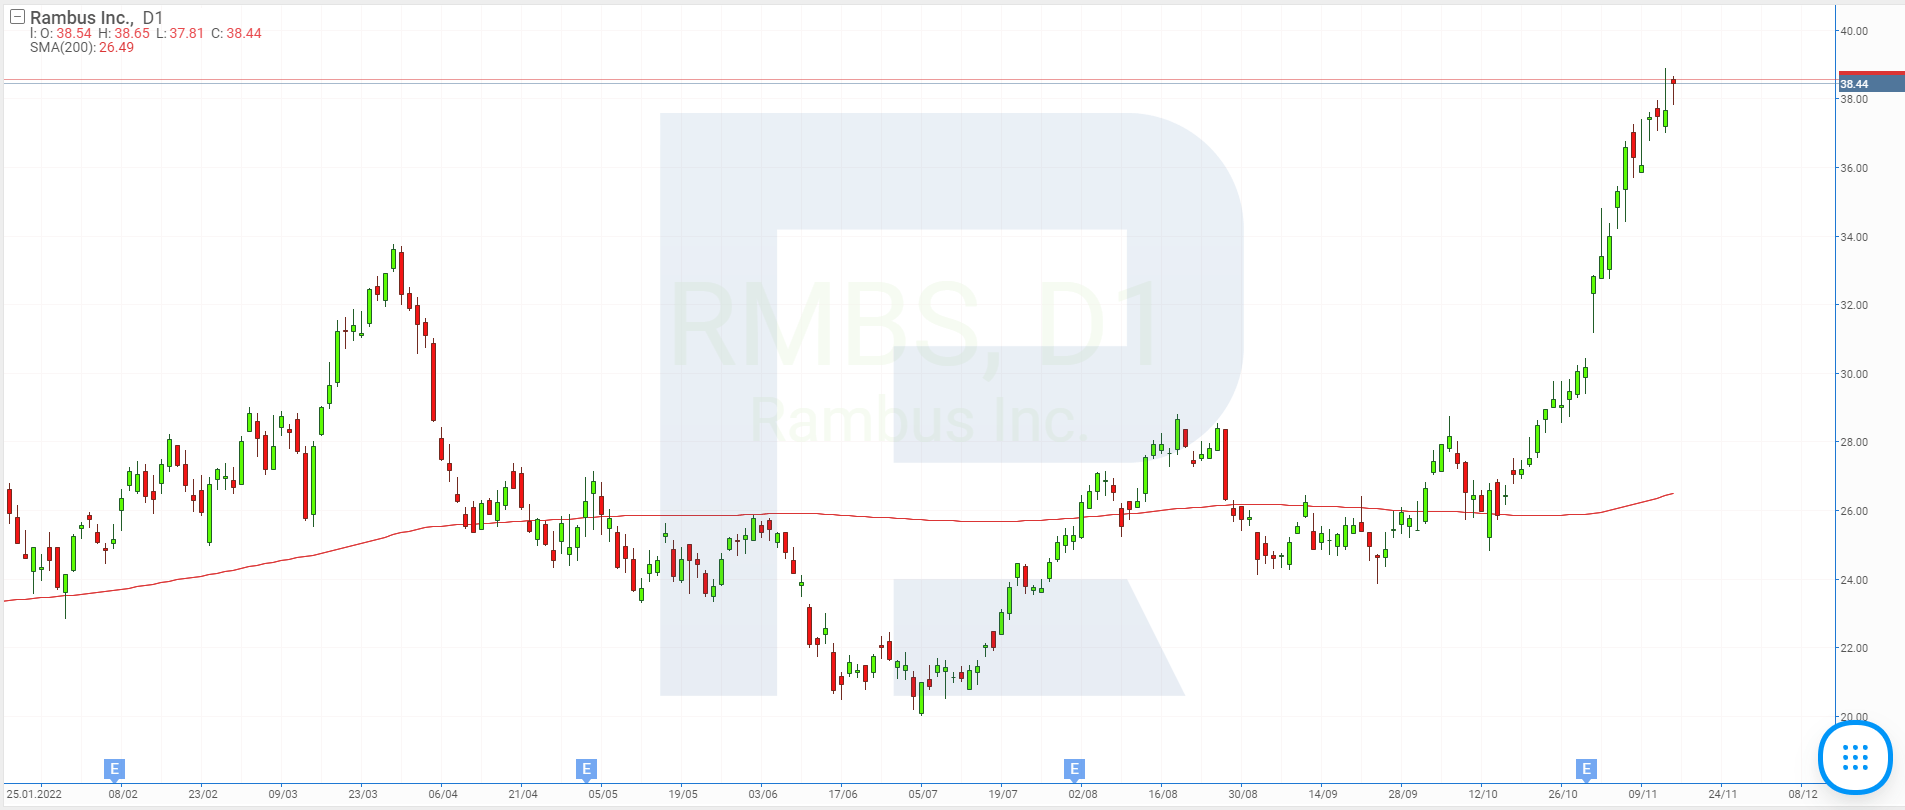 Stock price chart of Rambus